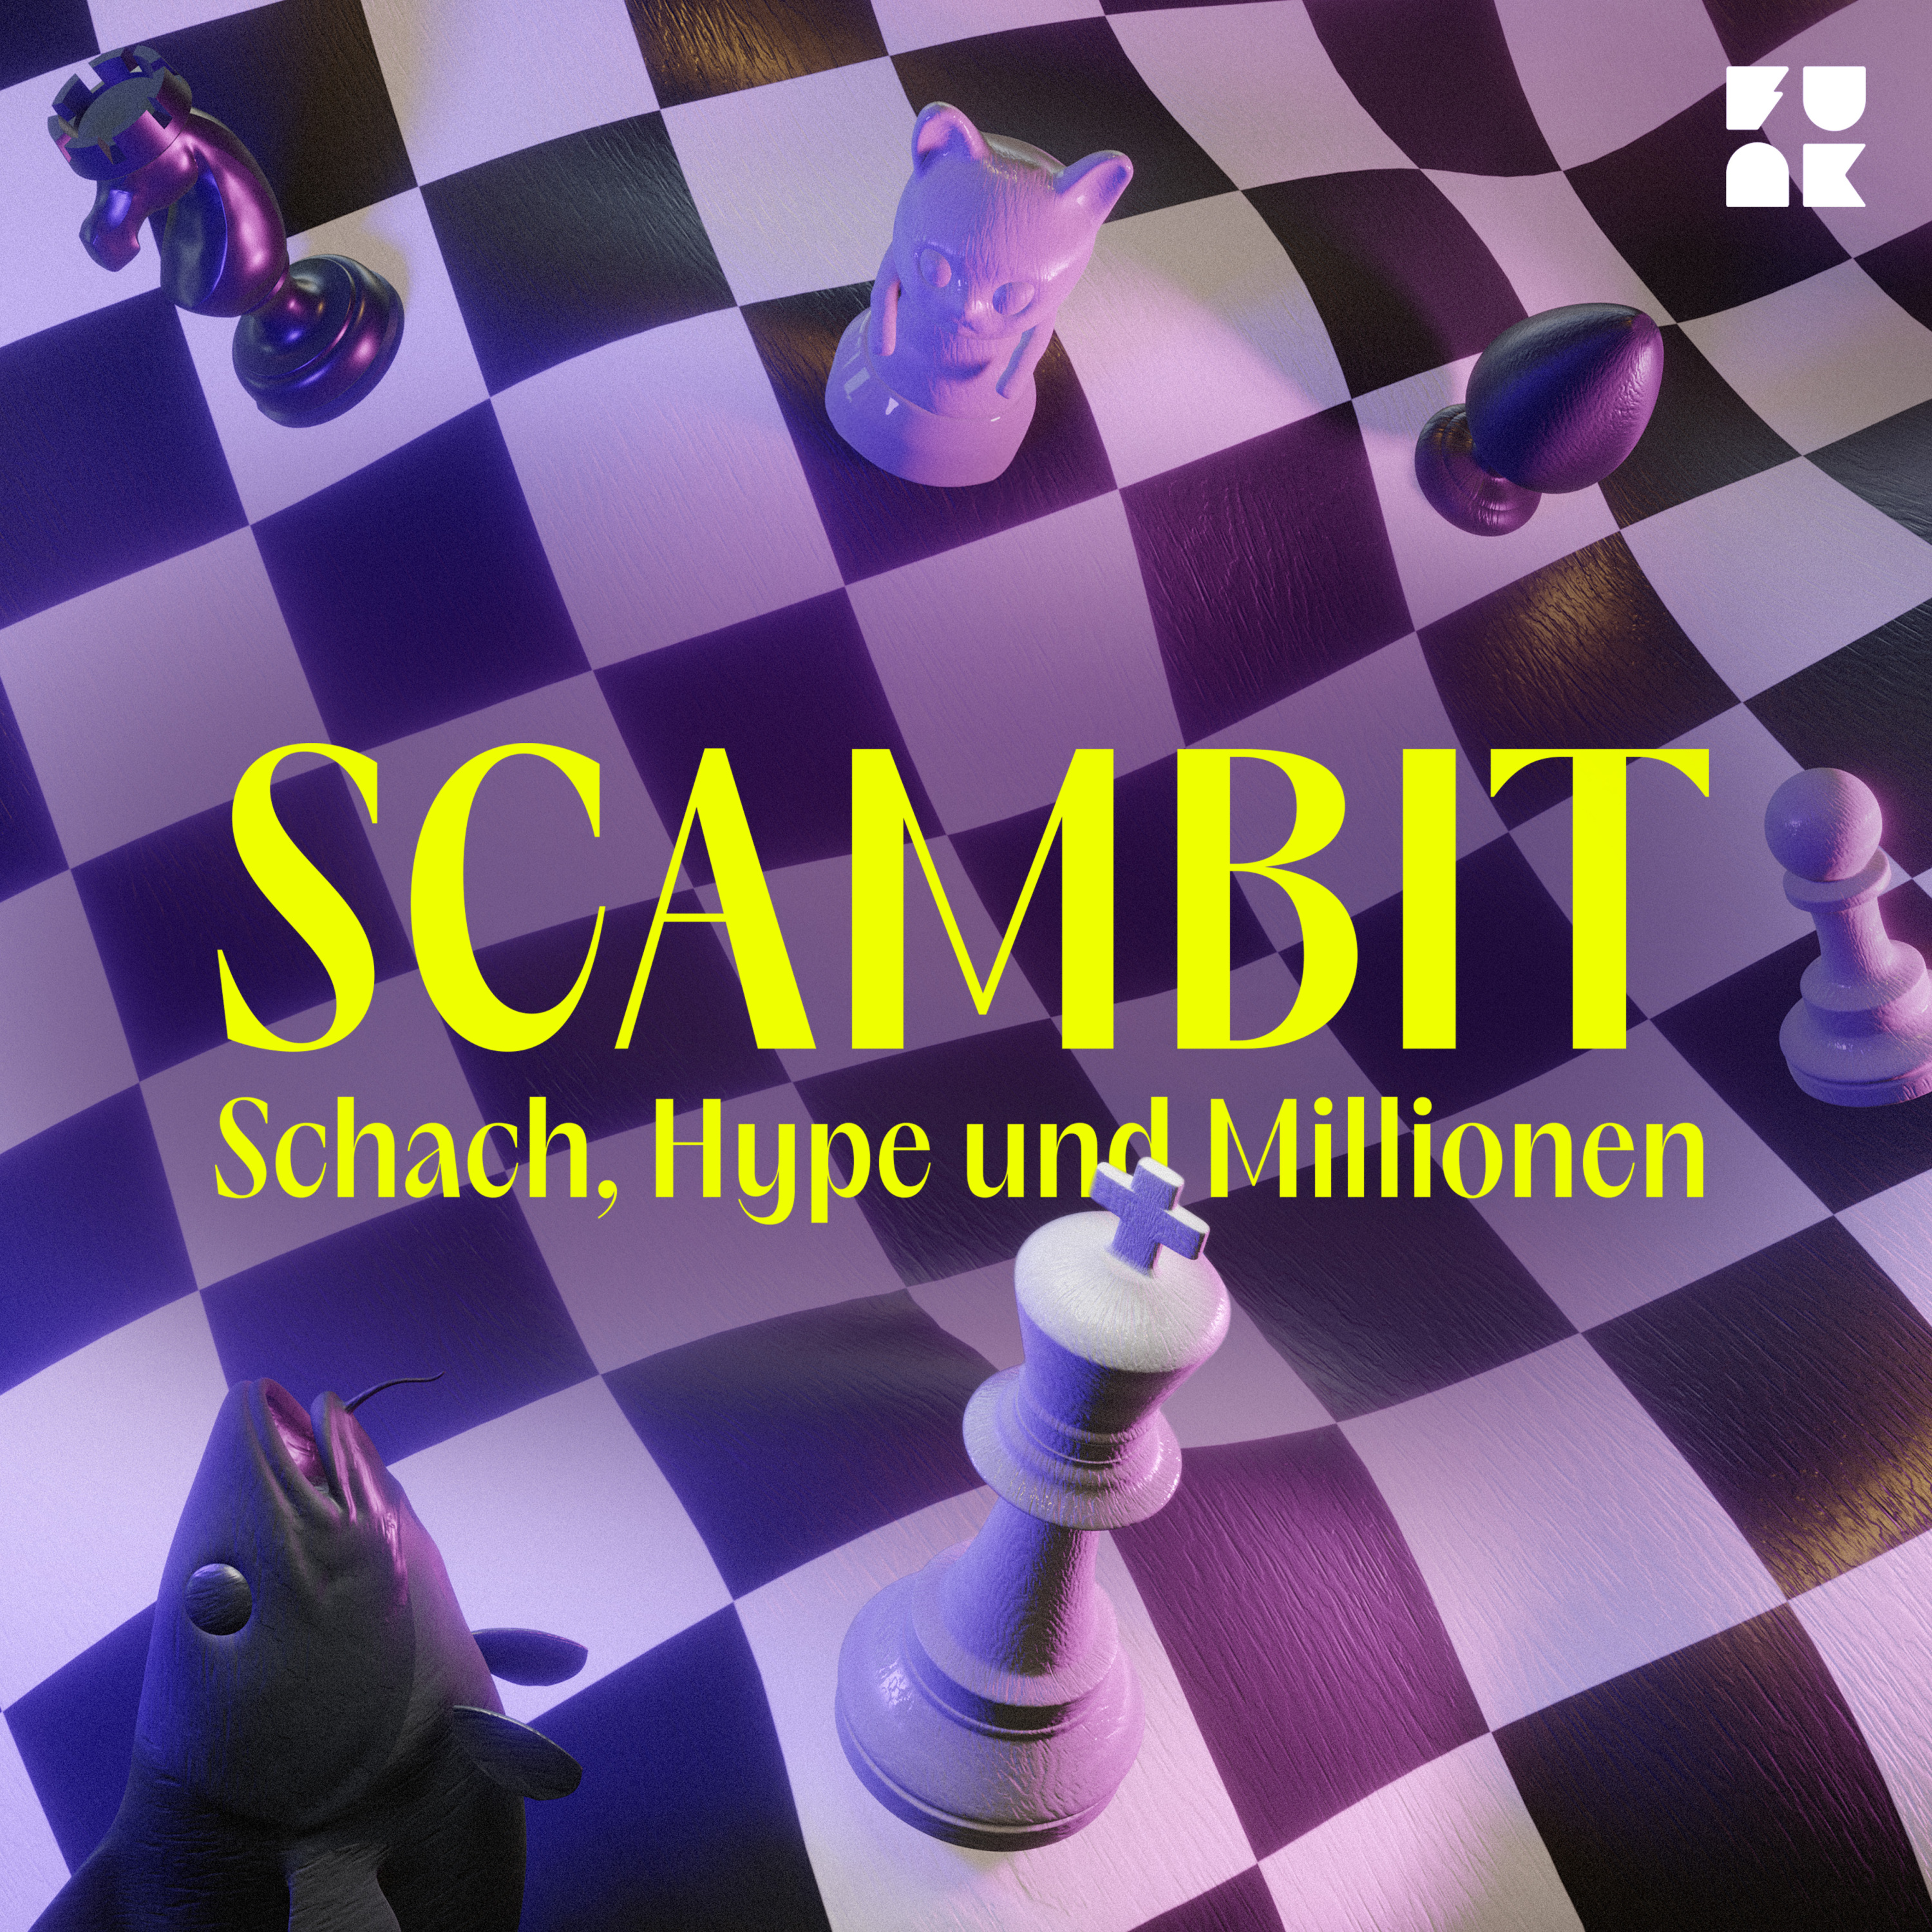 Scambit Schach, Hype und Millionen Podcast hören